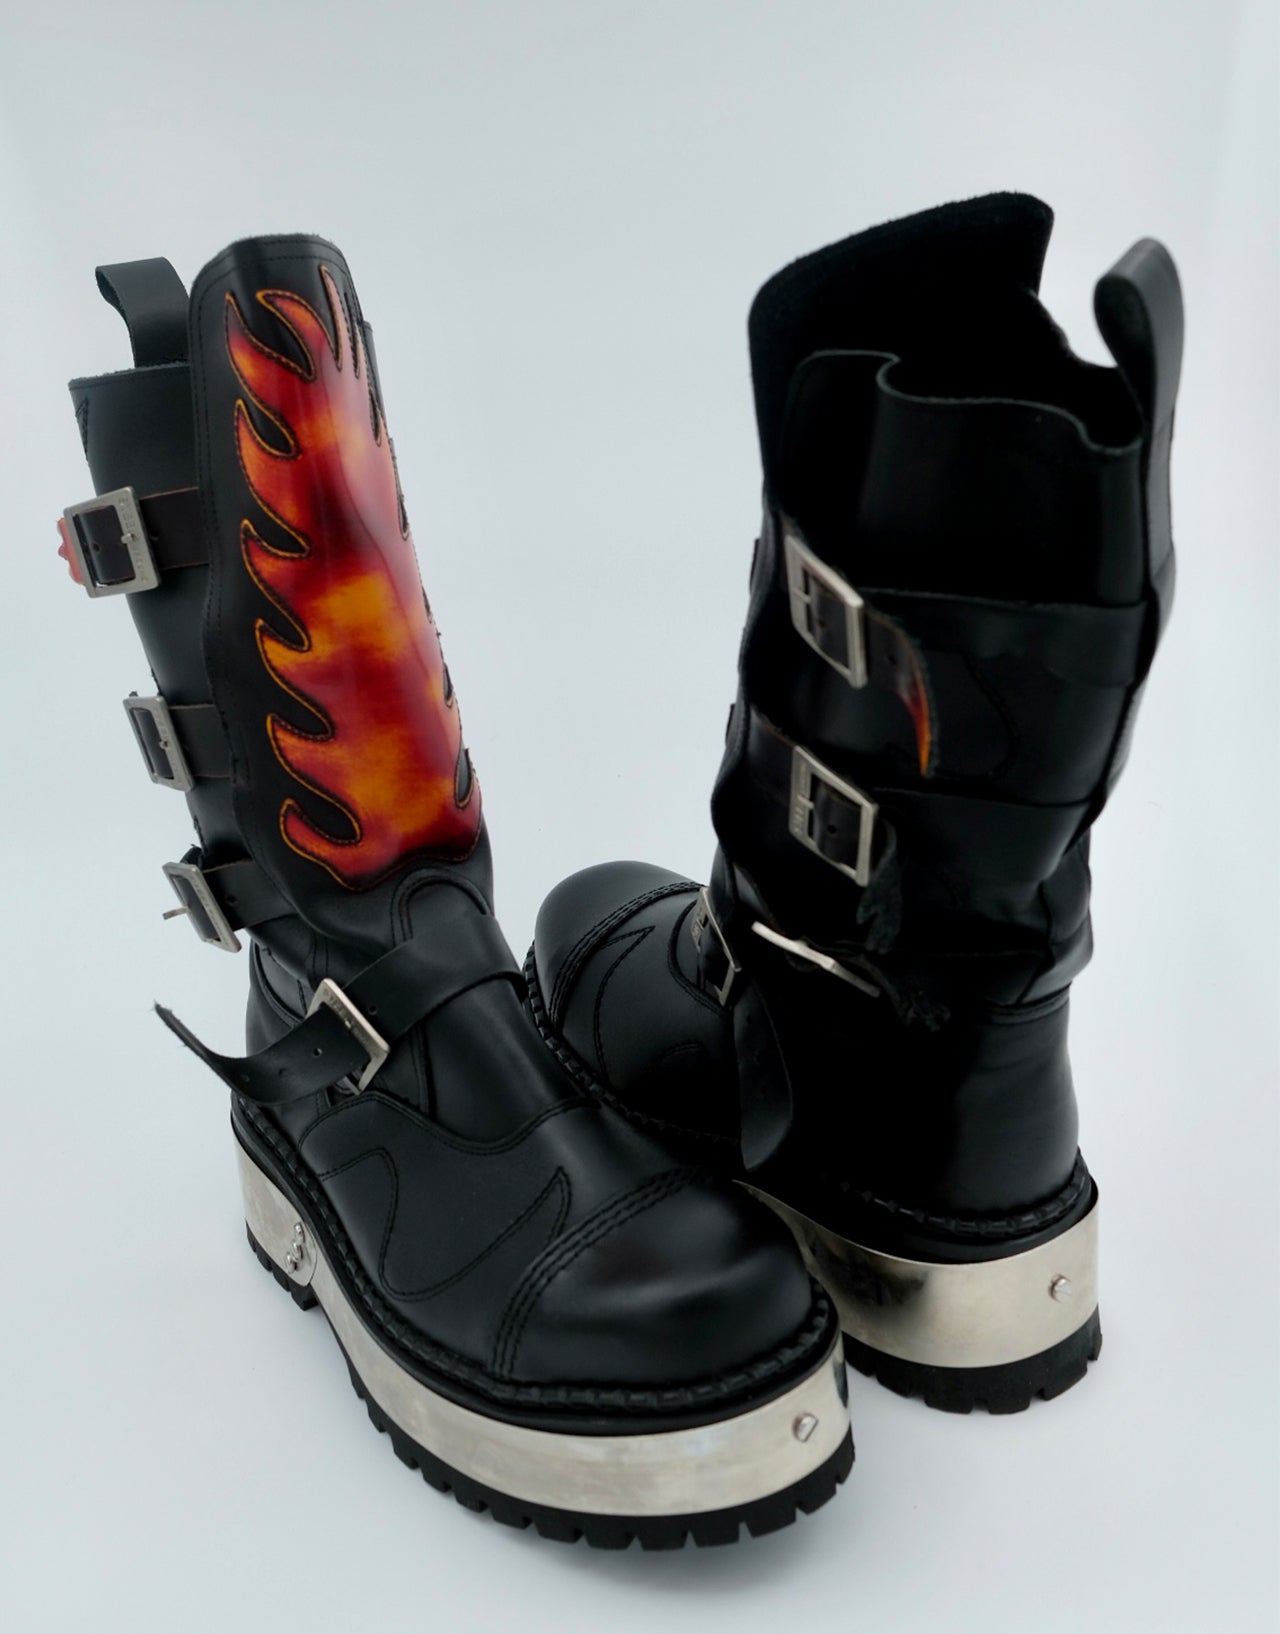 Fire Punk Boot